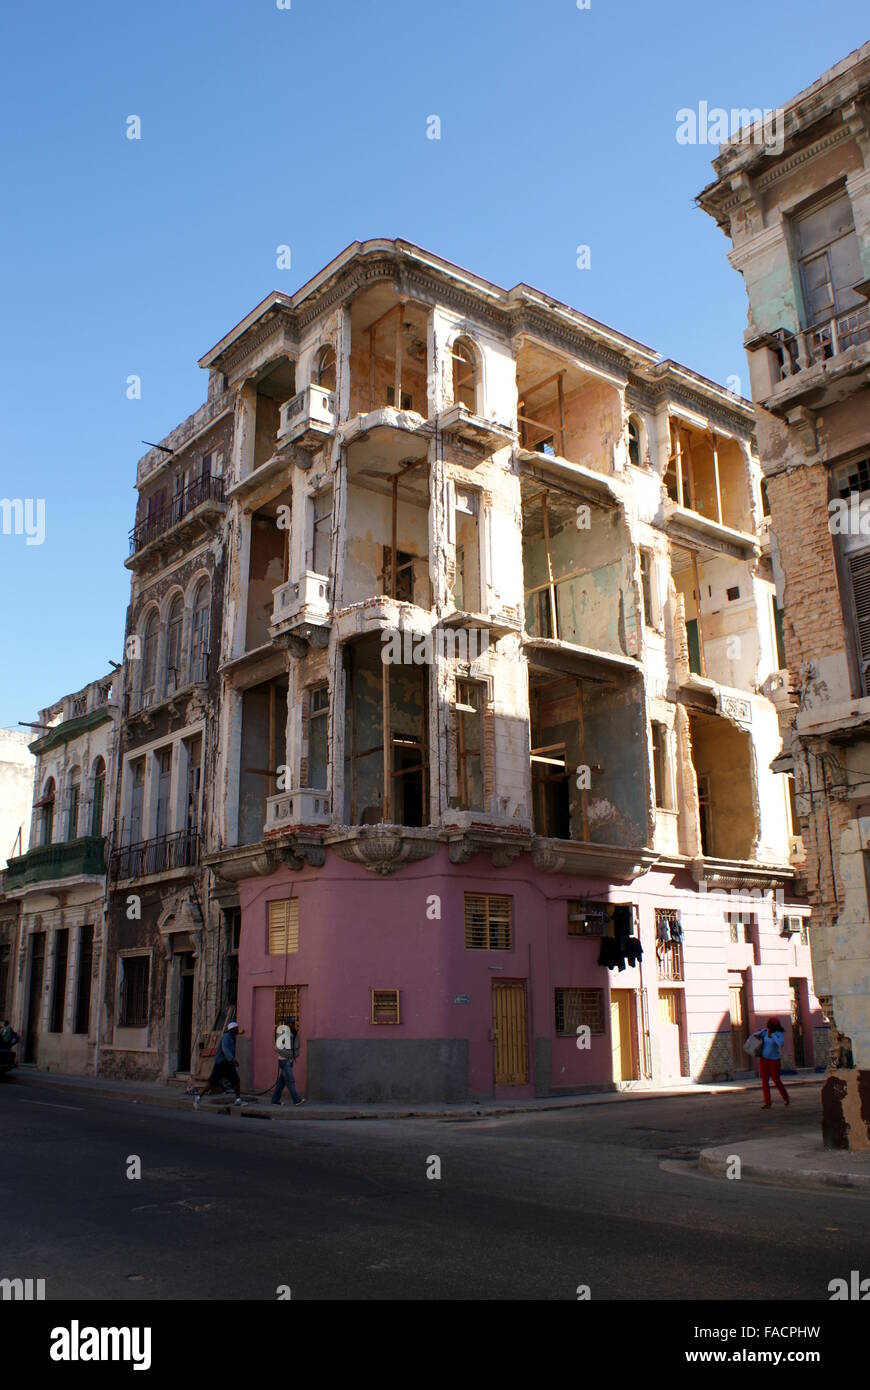 Derelict building, Havana, Cuba Stock Photo